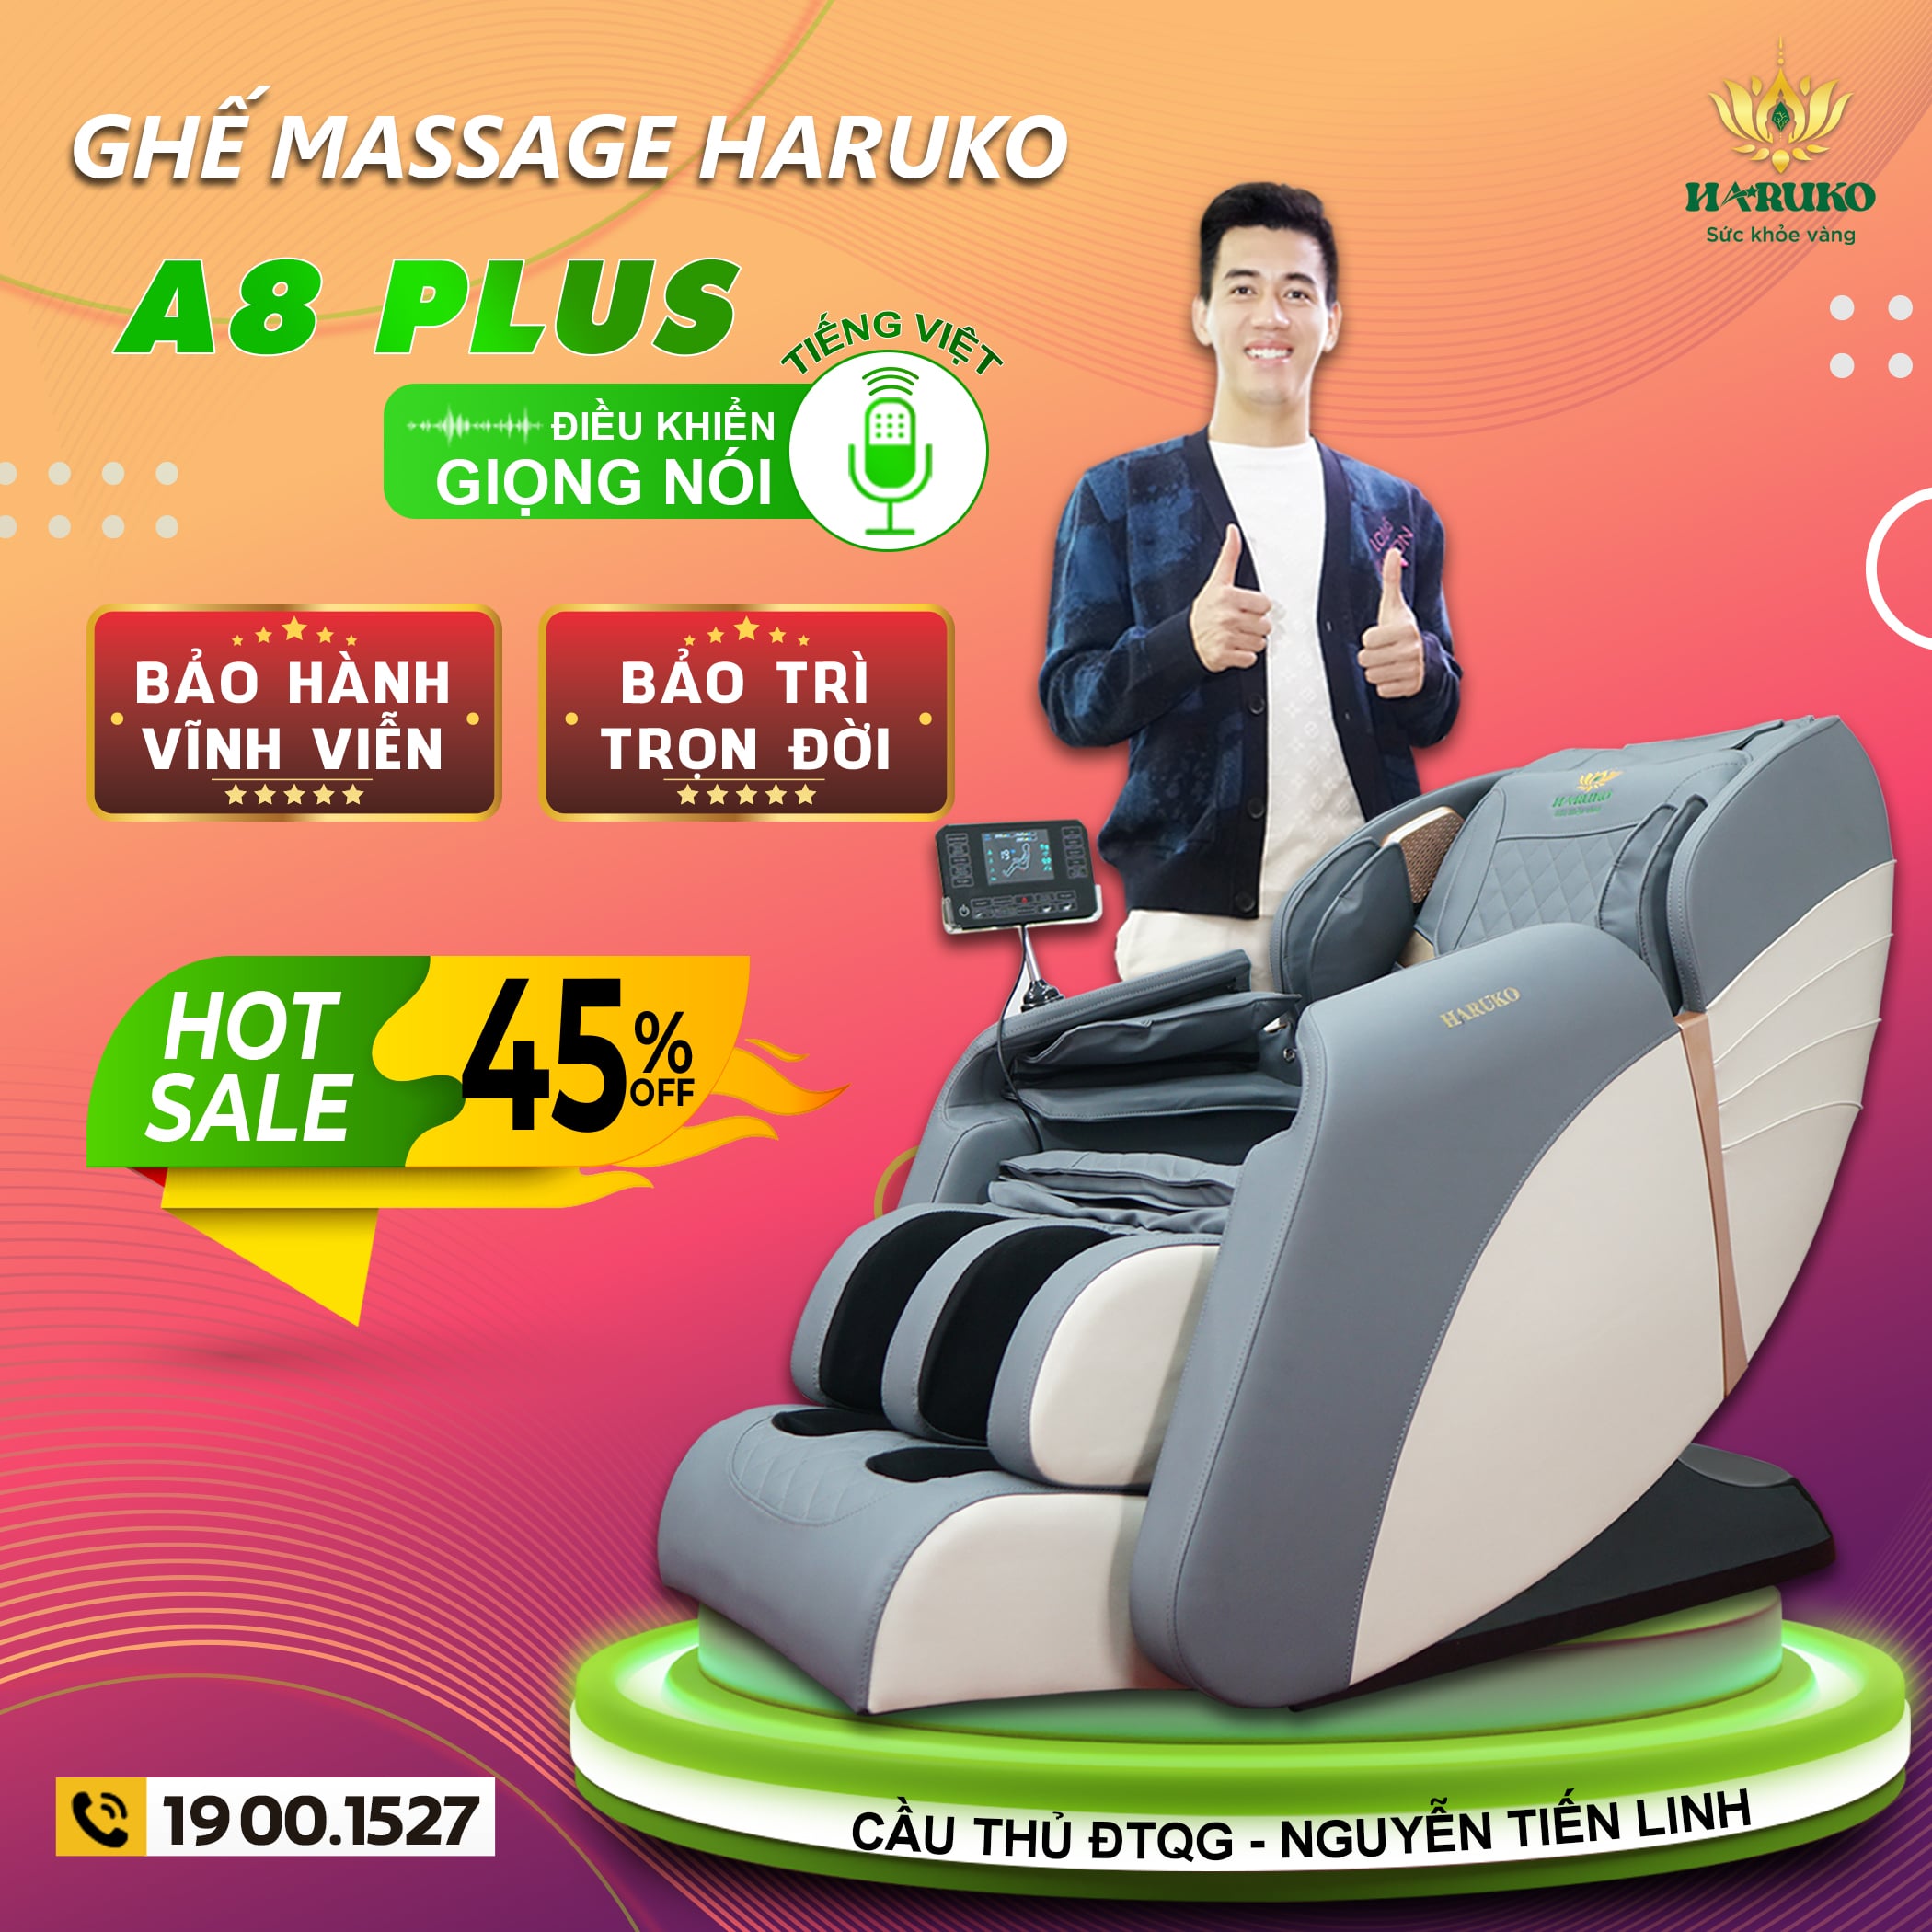 Haruko-A8 Plus với tính năng điều khiển bằng giọng nói công nghệ AI hiện đại rất đáng để sở hữu đối với những khách hàng mới